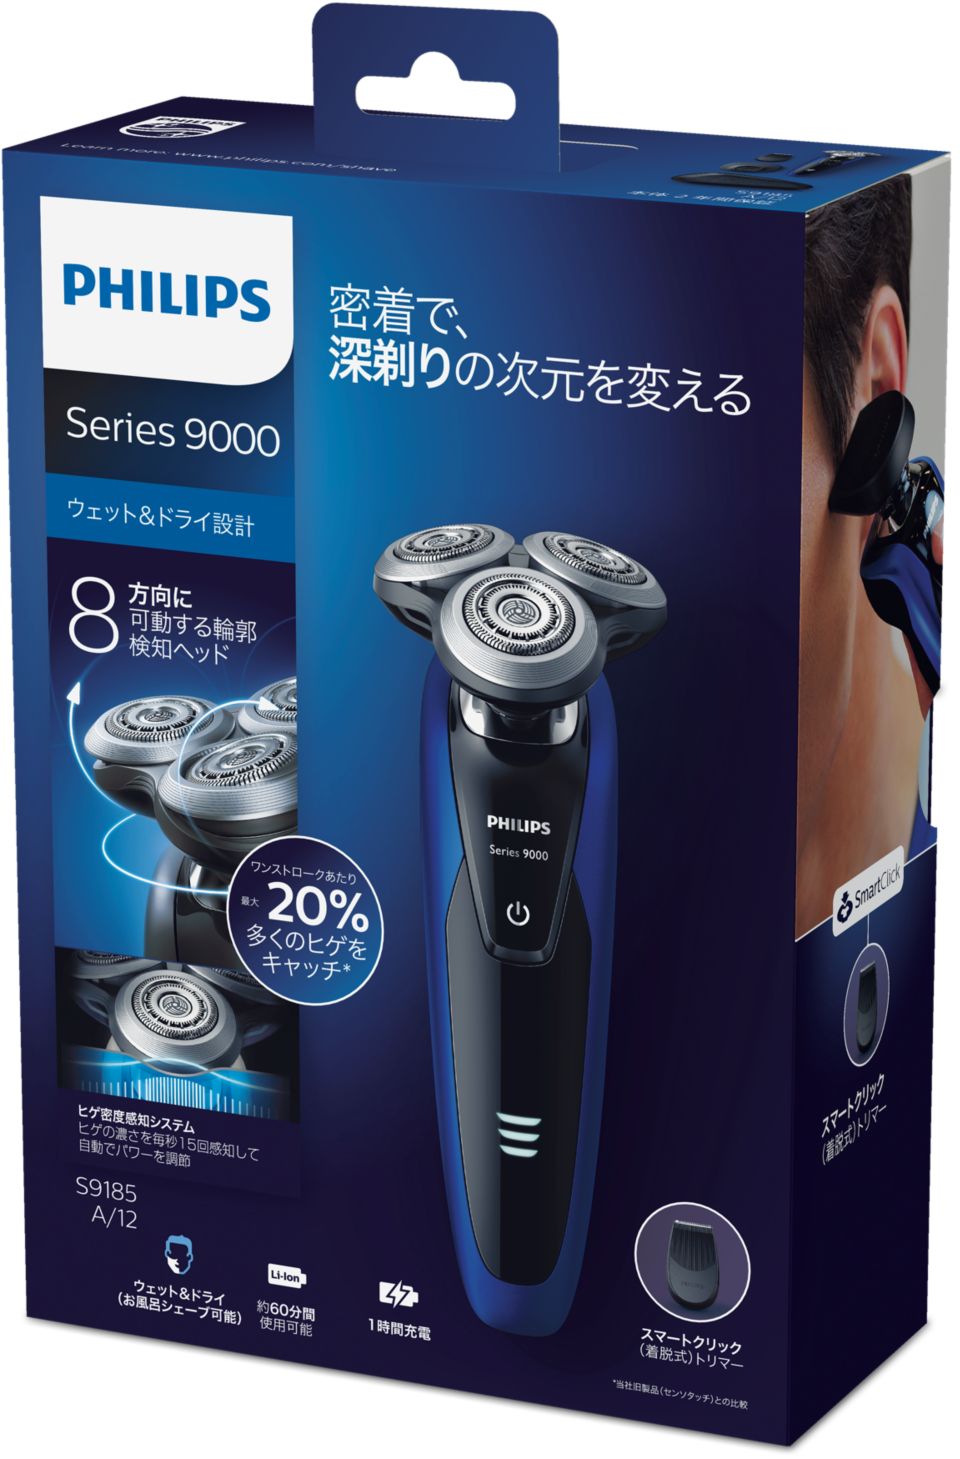 フィリップス 9000シリーズ メンズ 電気シェーバー S9185A/12